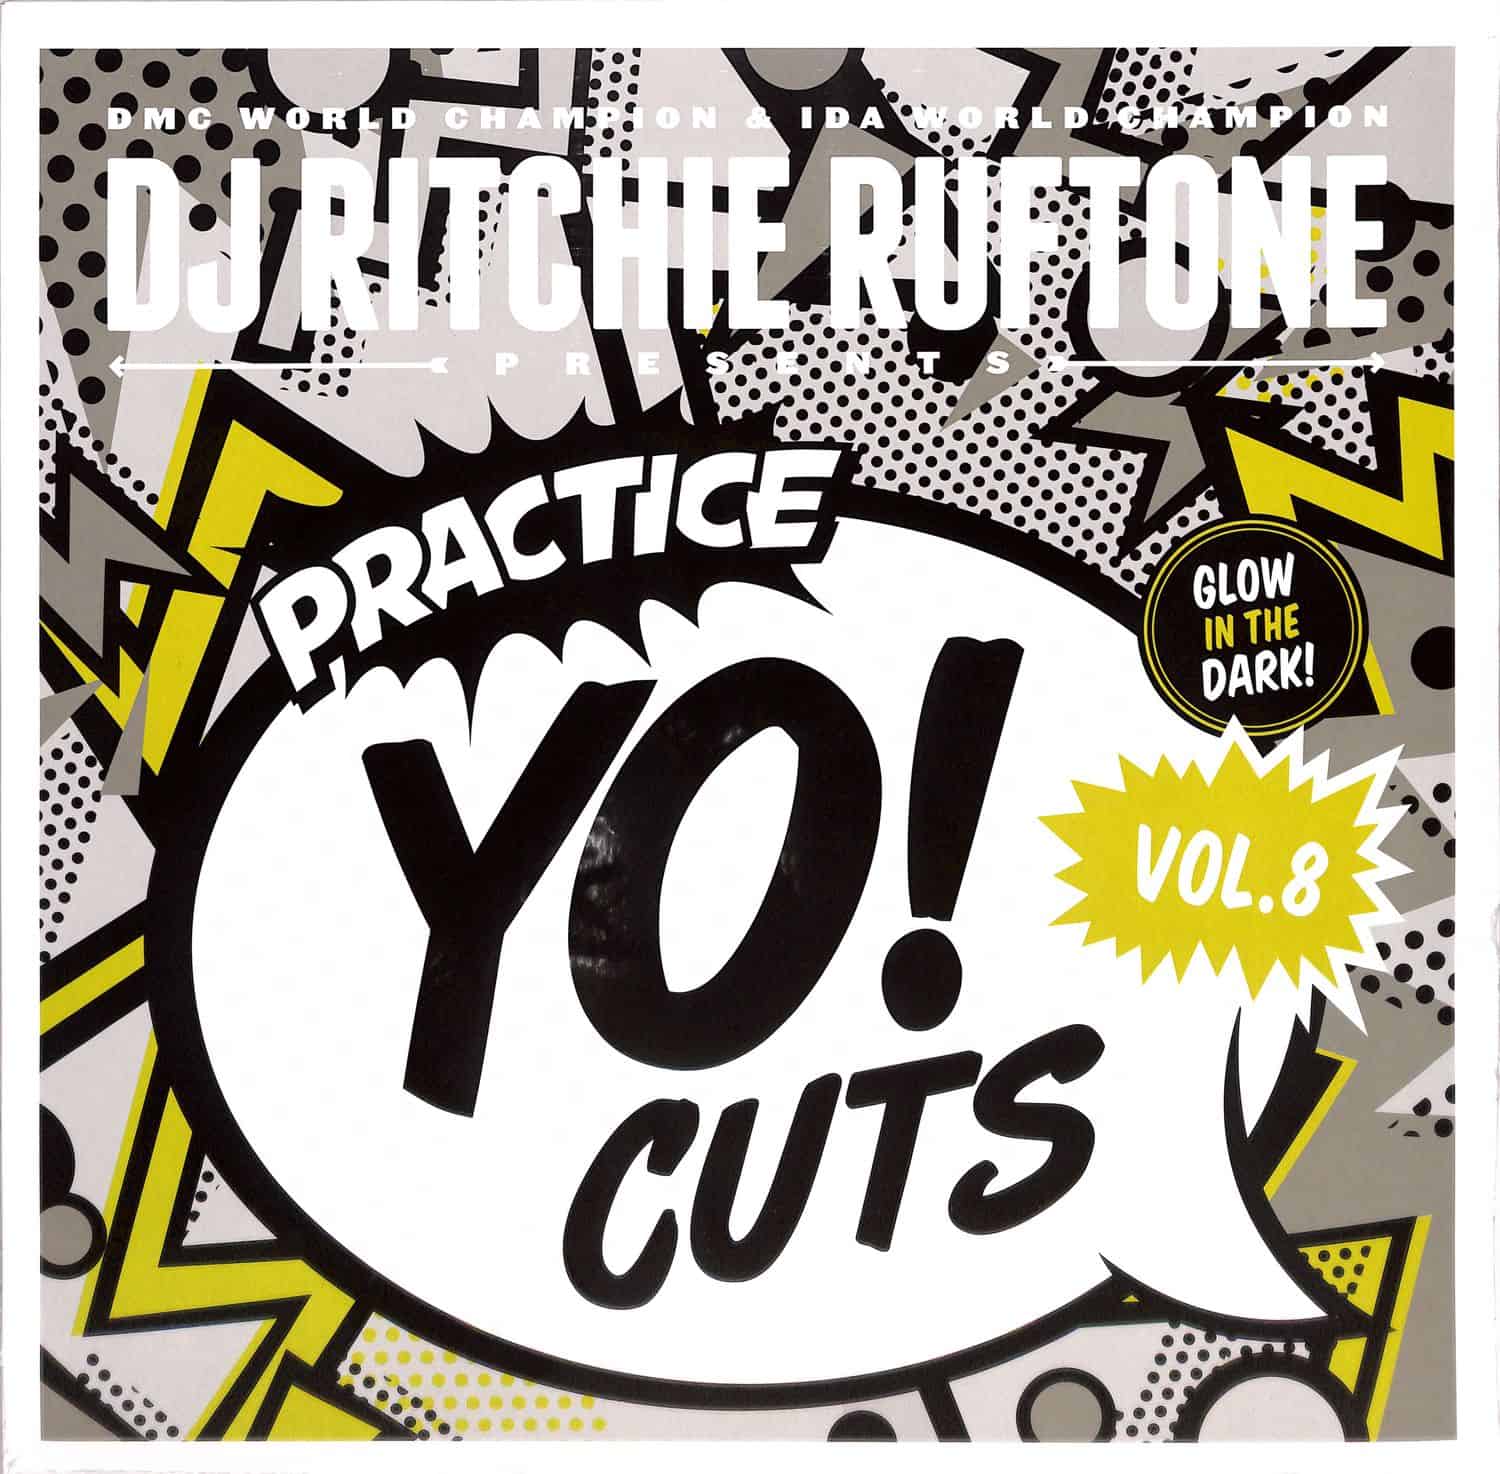 DJ Ritchie Rufftone - PRACTICE YO! CUTS VOL.8 